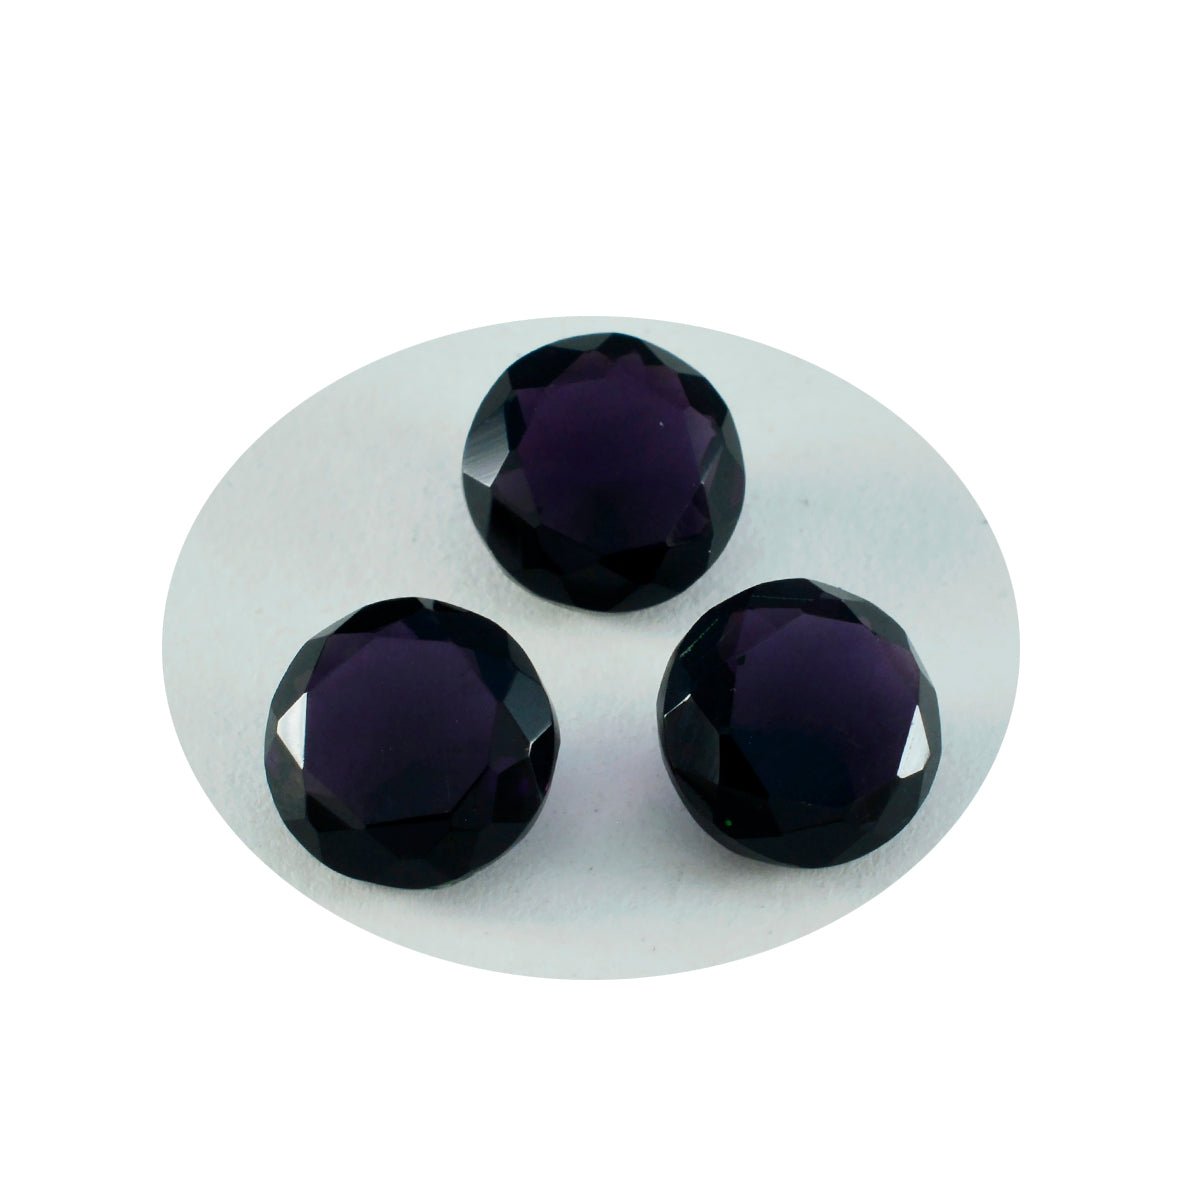 Riyogems 1 pieza amatista púrpura CZ facetada 3x3mm forma cuadrada piedra suelta de calidad fantástica